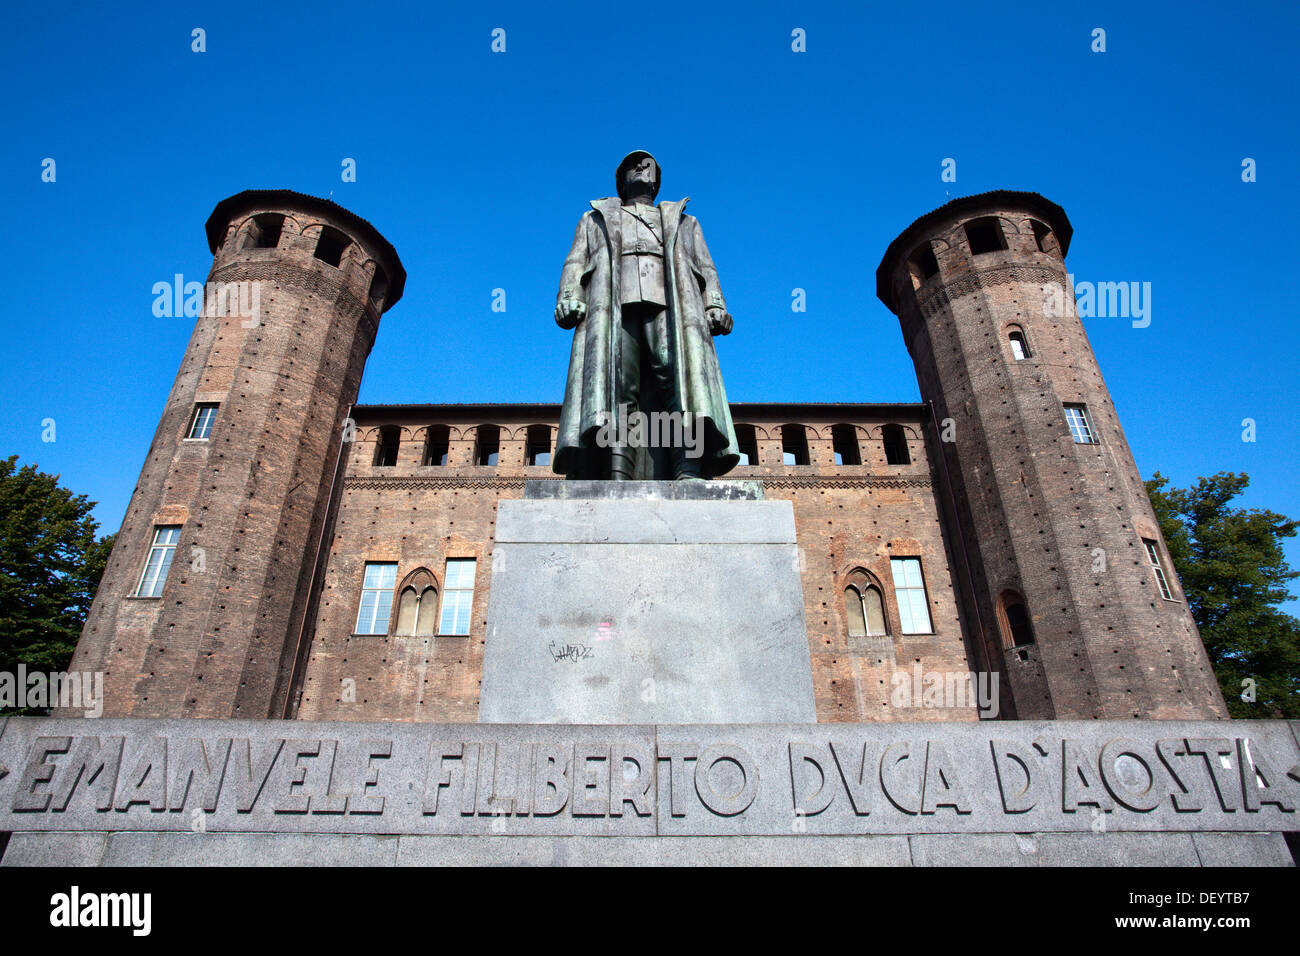 Prima mondiale di un memoriale di guerra per Emanuele Filiberto 2a duca d'Aosta in Piazza Castello Torino Piemonte Italia Foto Stock